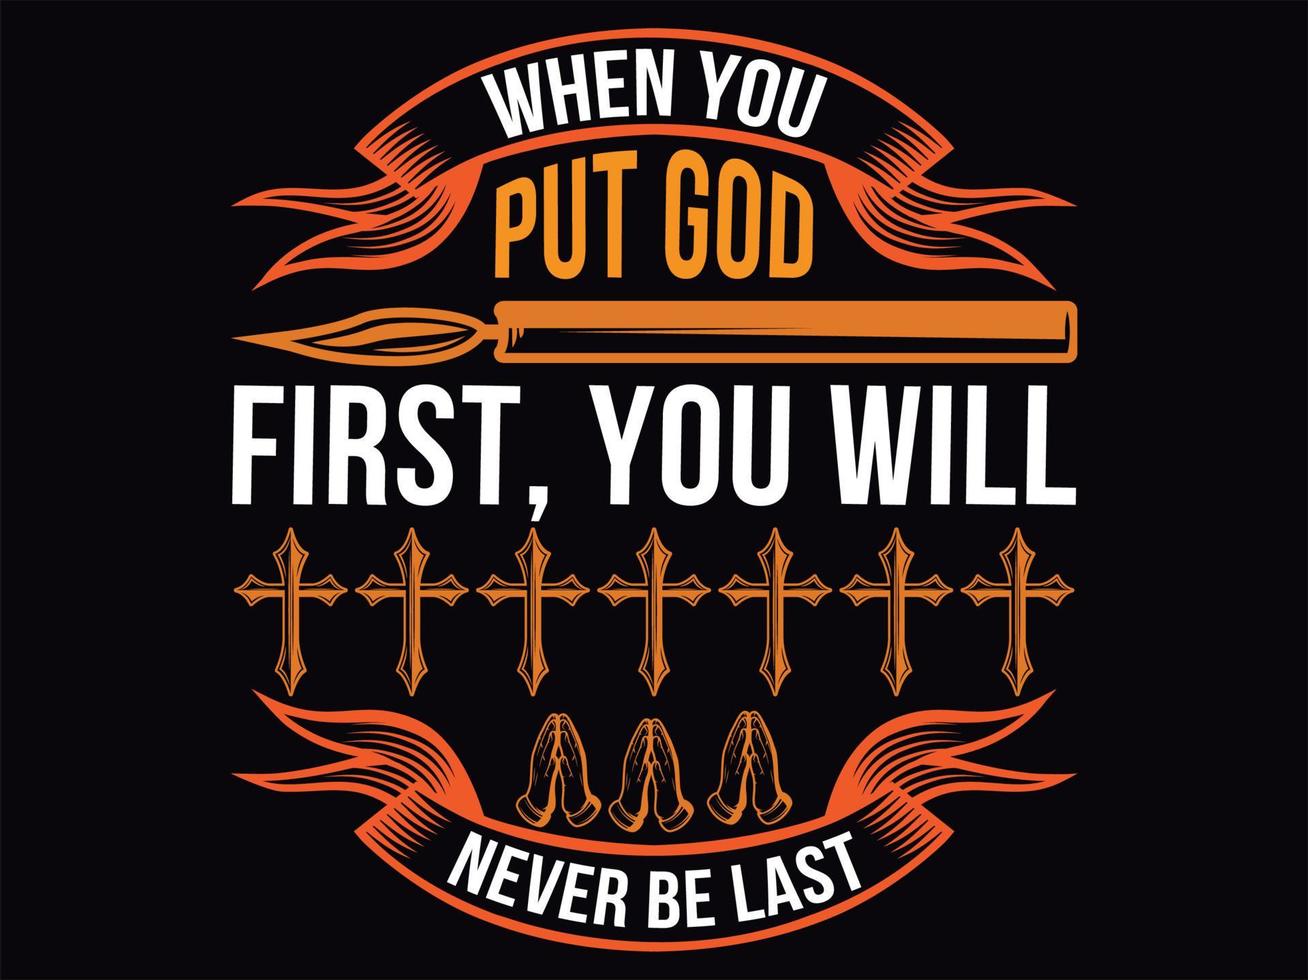 diseño de camiseta cristiana vector